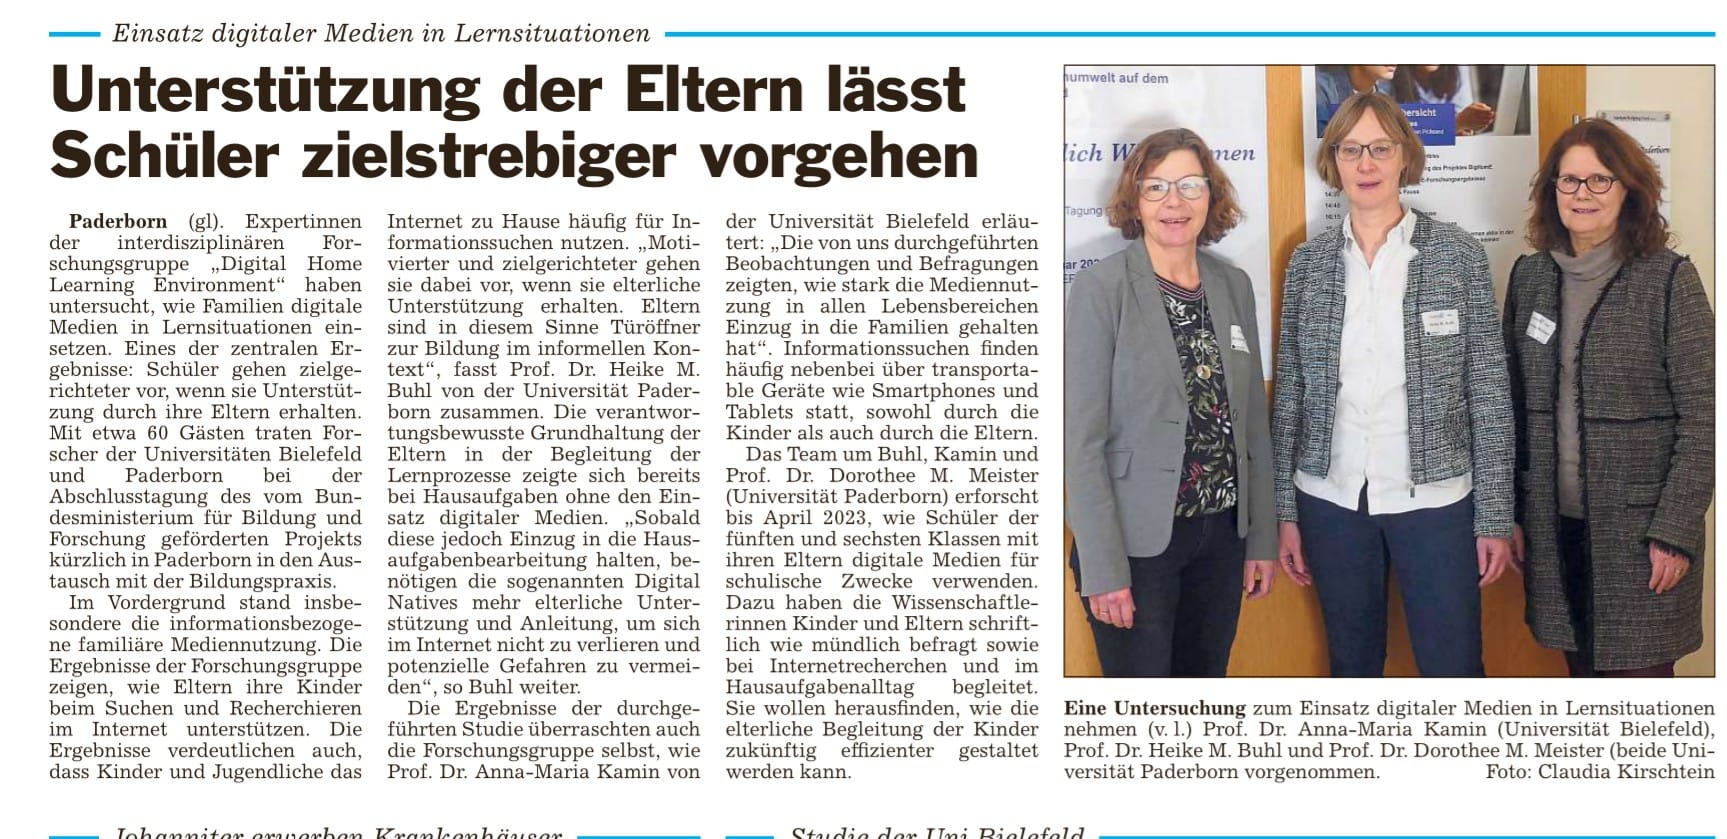 Neuer Artikel zur Transfertagung des DigHomE-Projekts am 09.02.2023 im Aspethera in Paderborn in der Zeitung "Glocke" erschienen. Titel: Unterstützung der Eltern lässt Schüler zielstrebiger vorgehen